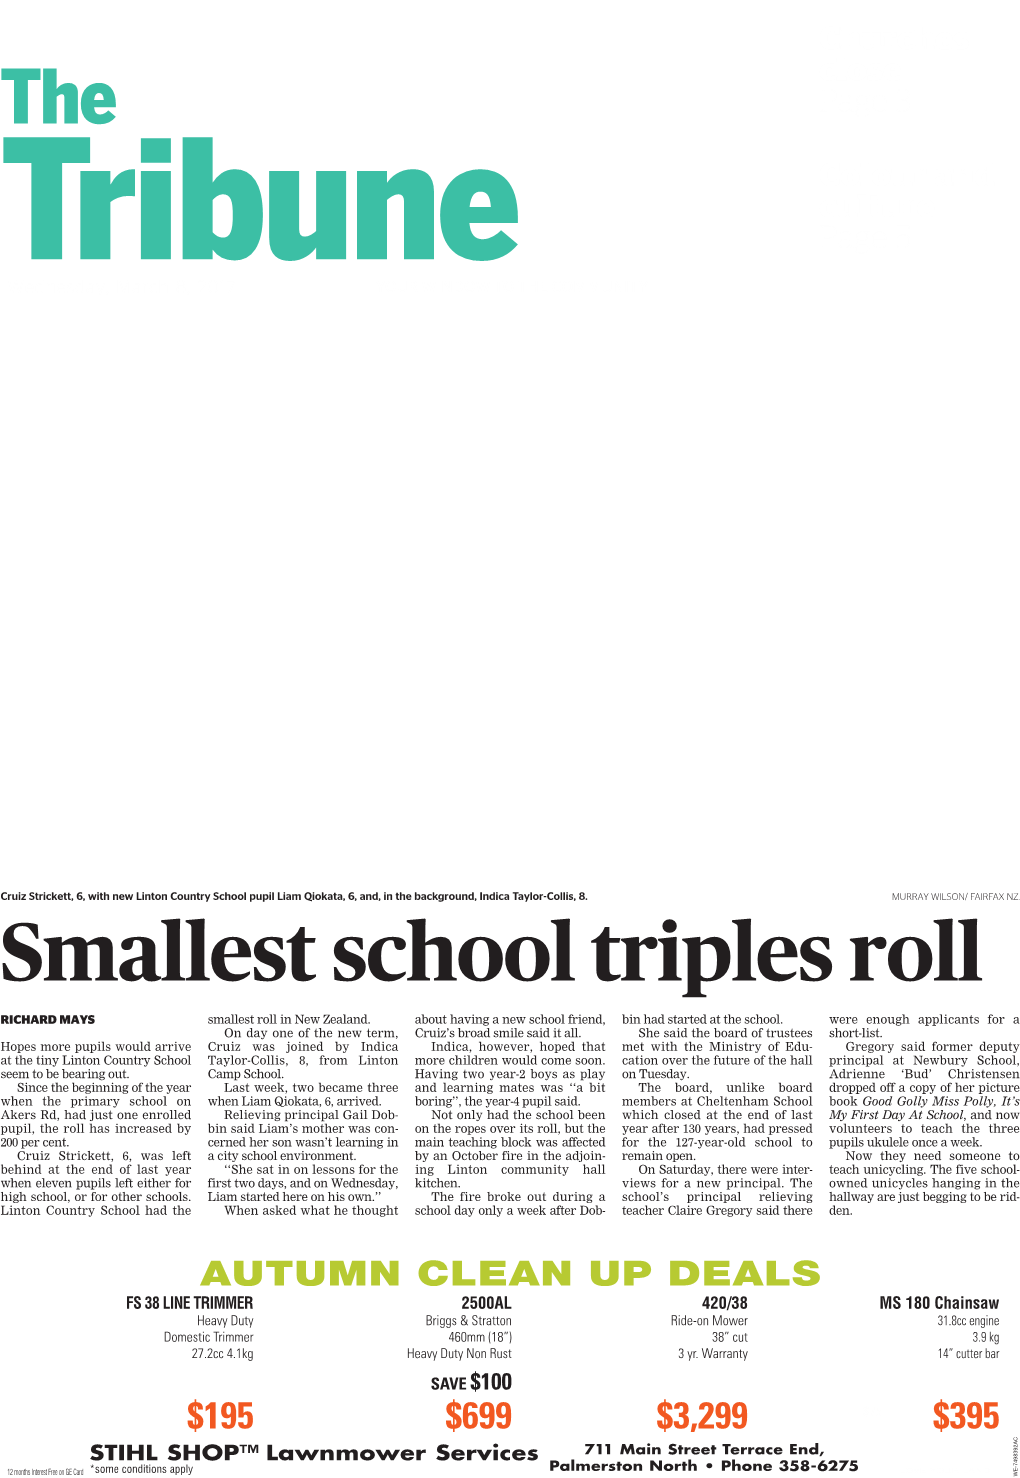 Smallest School Triples Roll